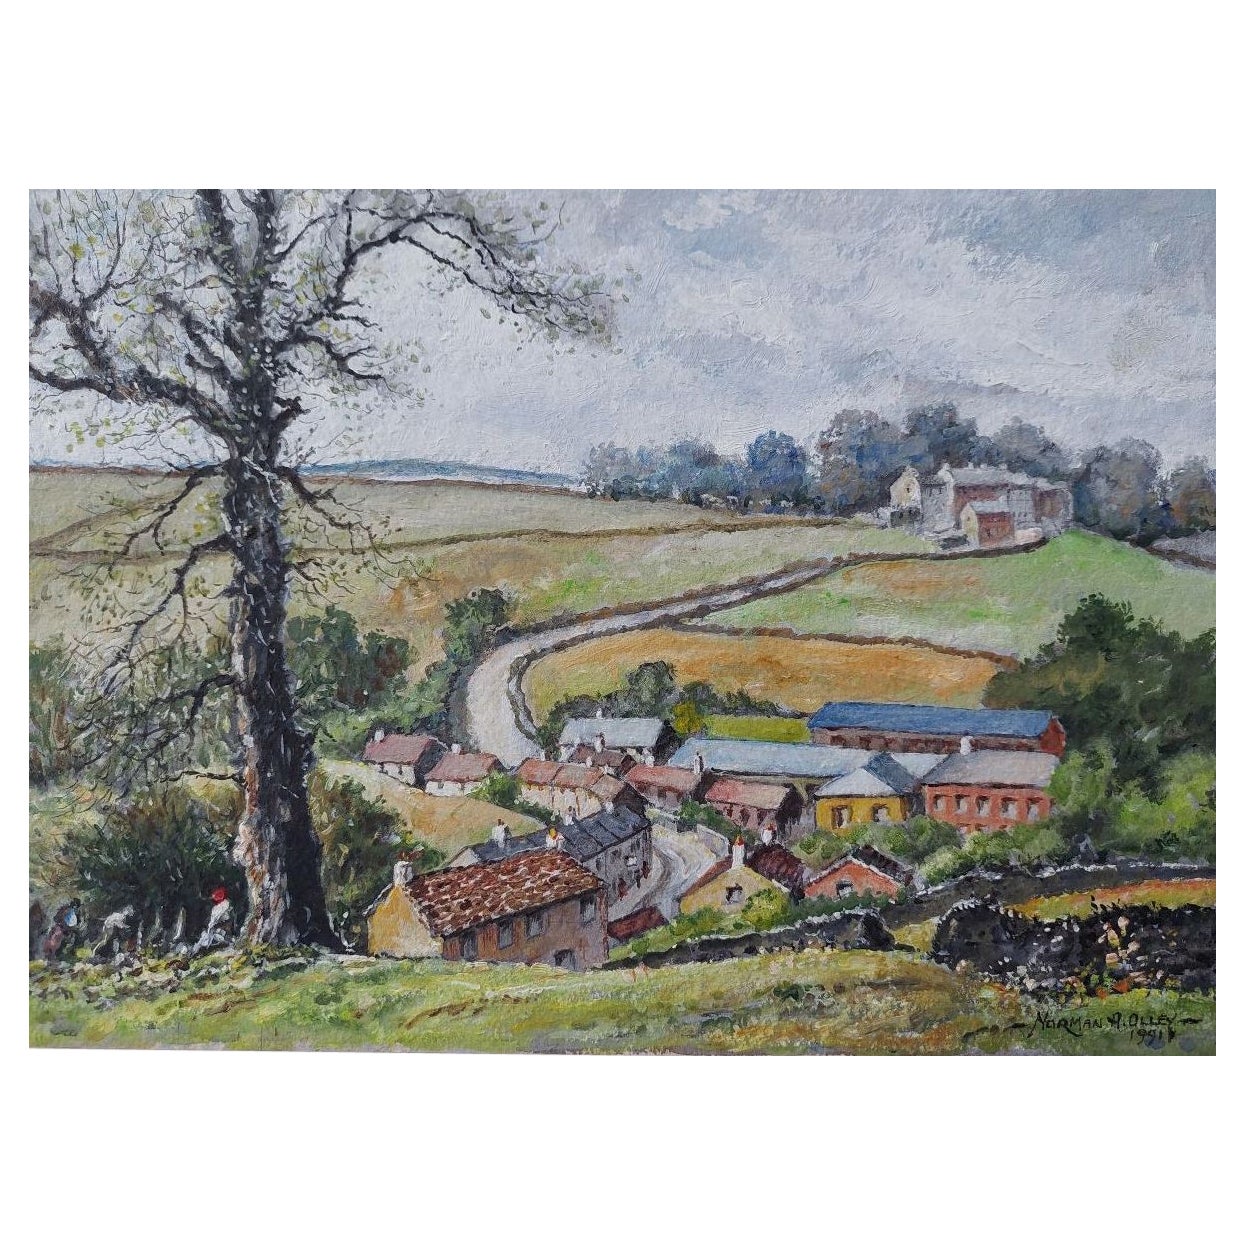 Traditionelles englisches Gemälde, Landschaft auf einer Gänseblümchenfarm, Braithwaite Yorkshire